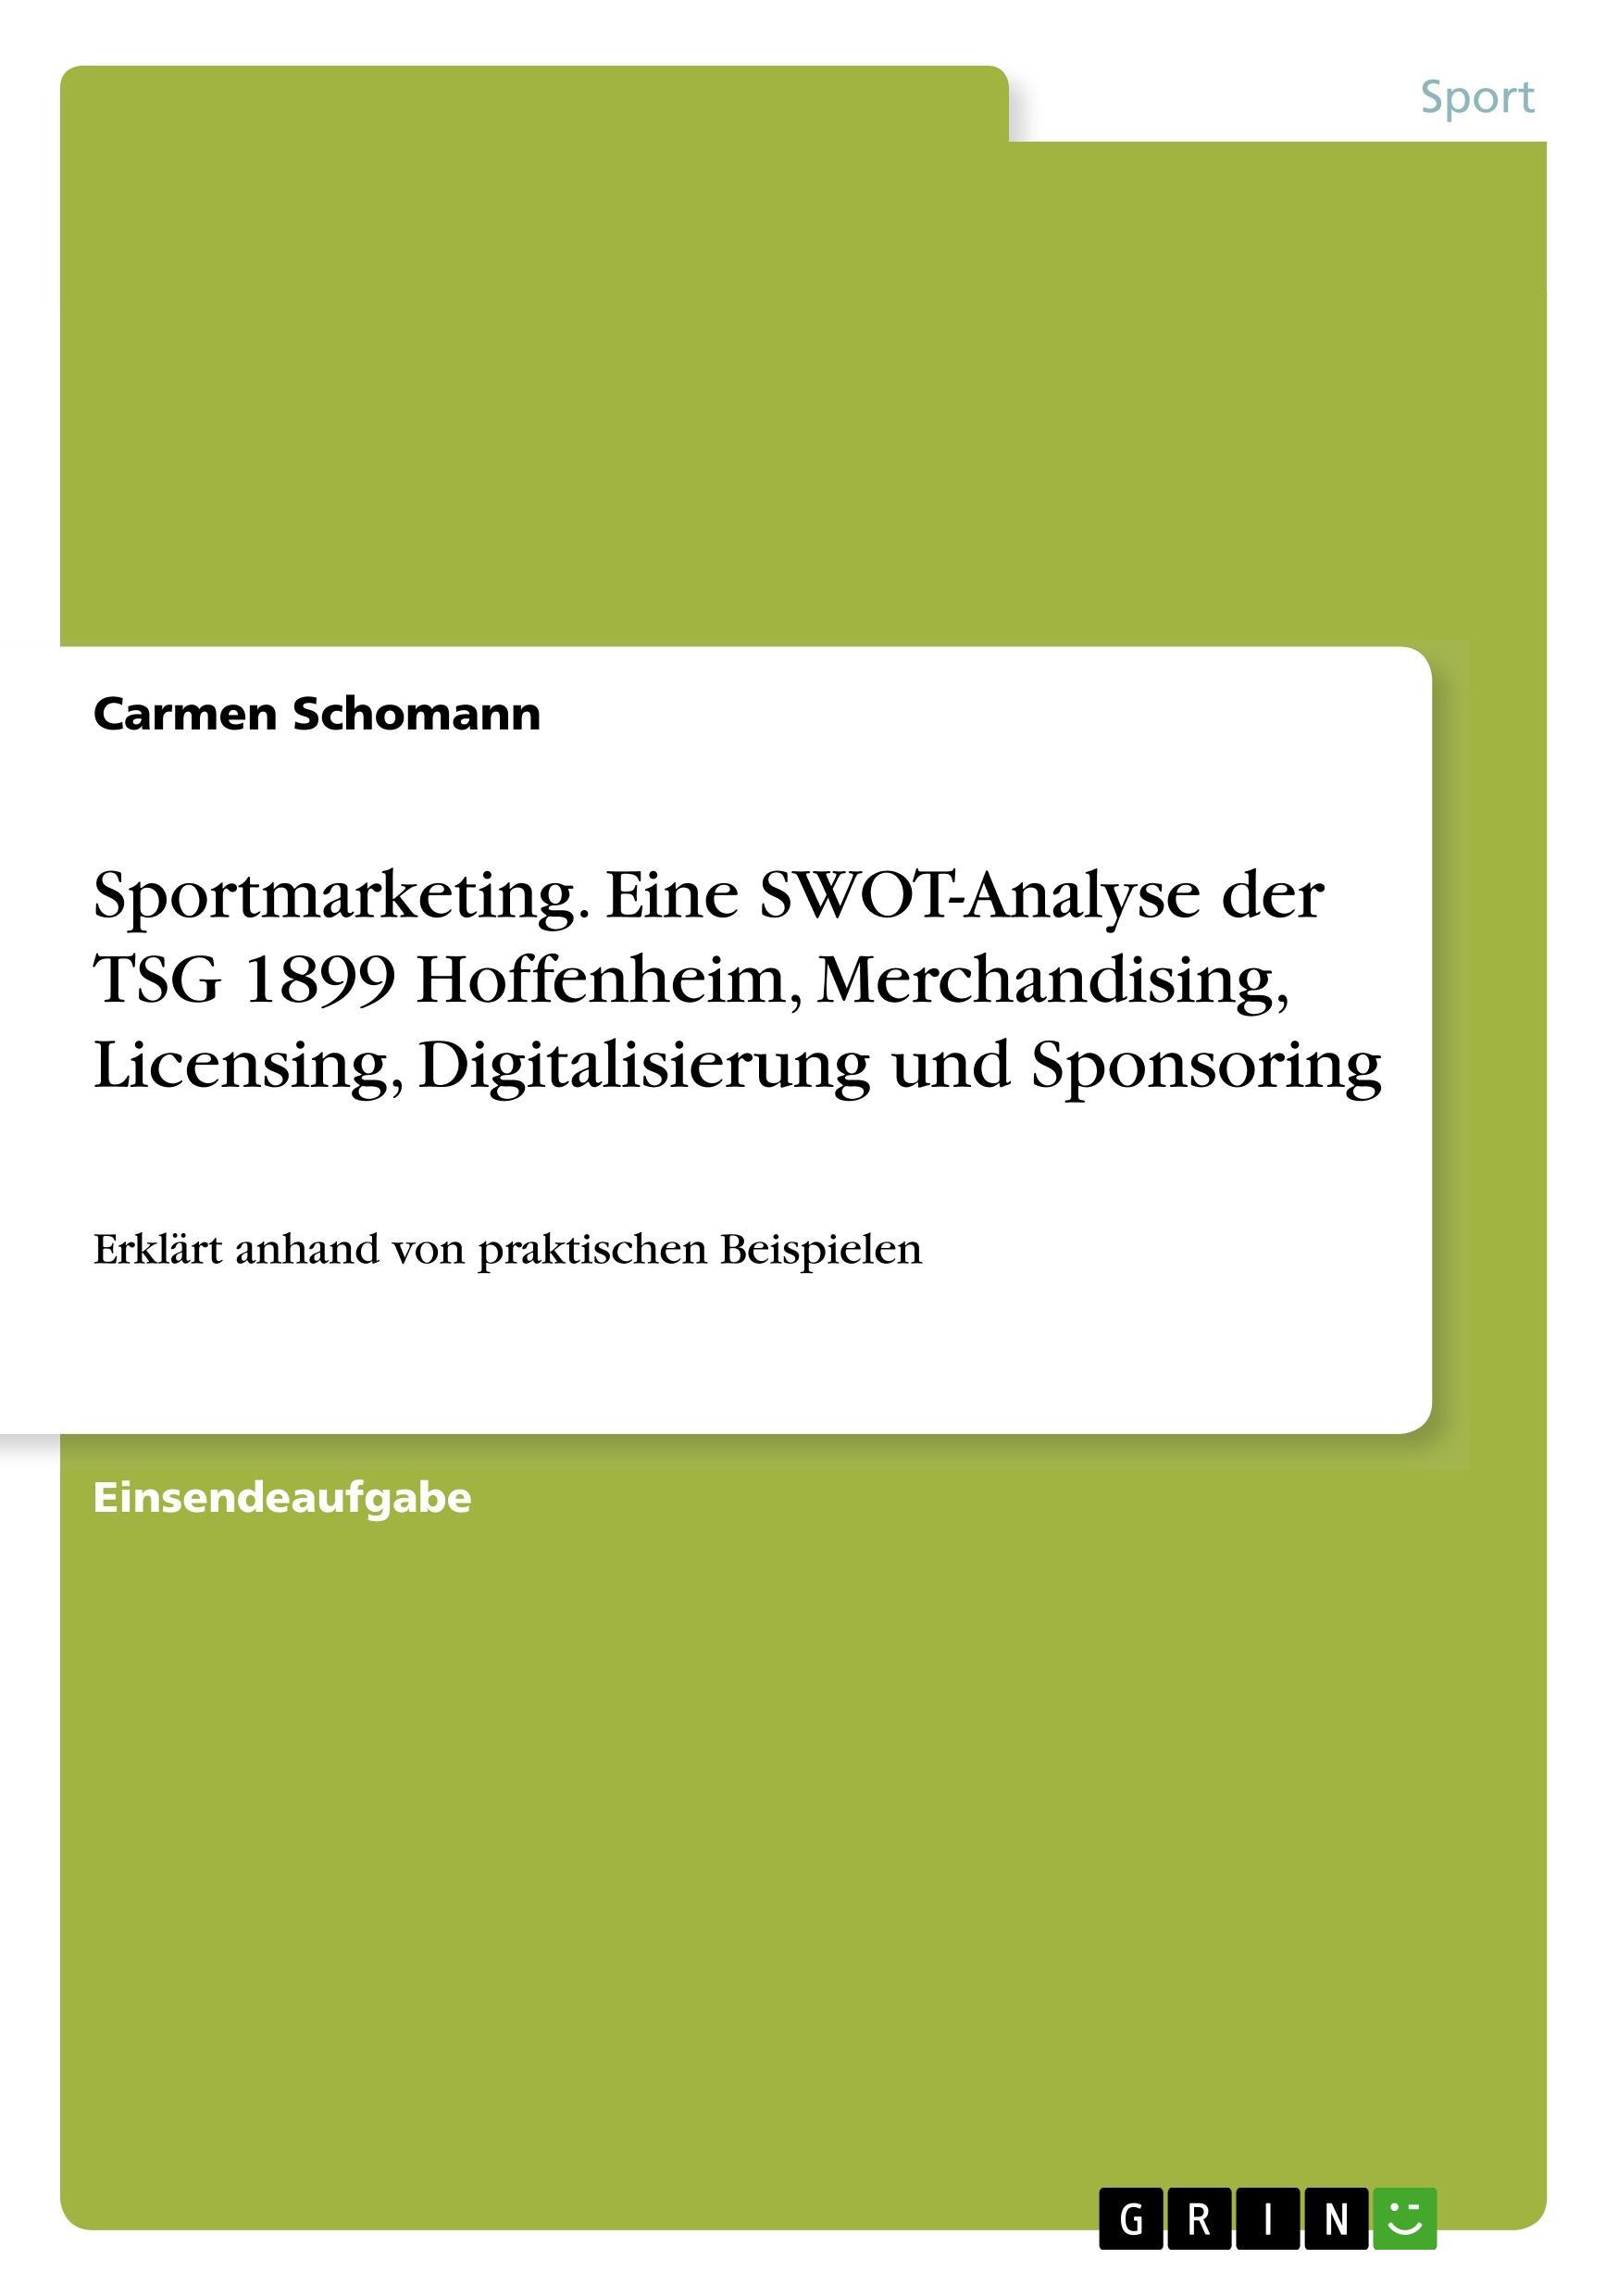 Sportmarketing. Eine SWOT-Analyse der TSG 1899 Hoffenheim, Merchandising, Licensing, Digitalisierung und Sponsoring - Schomann, Carmen